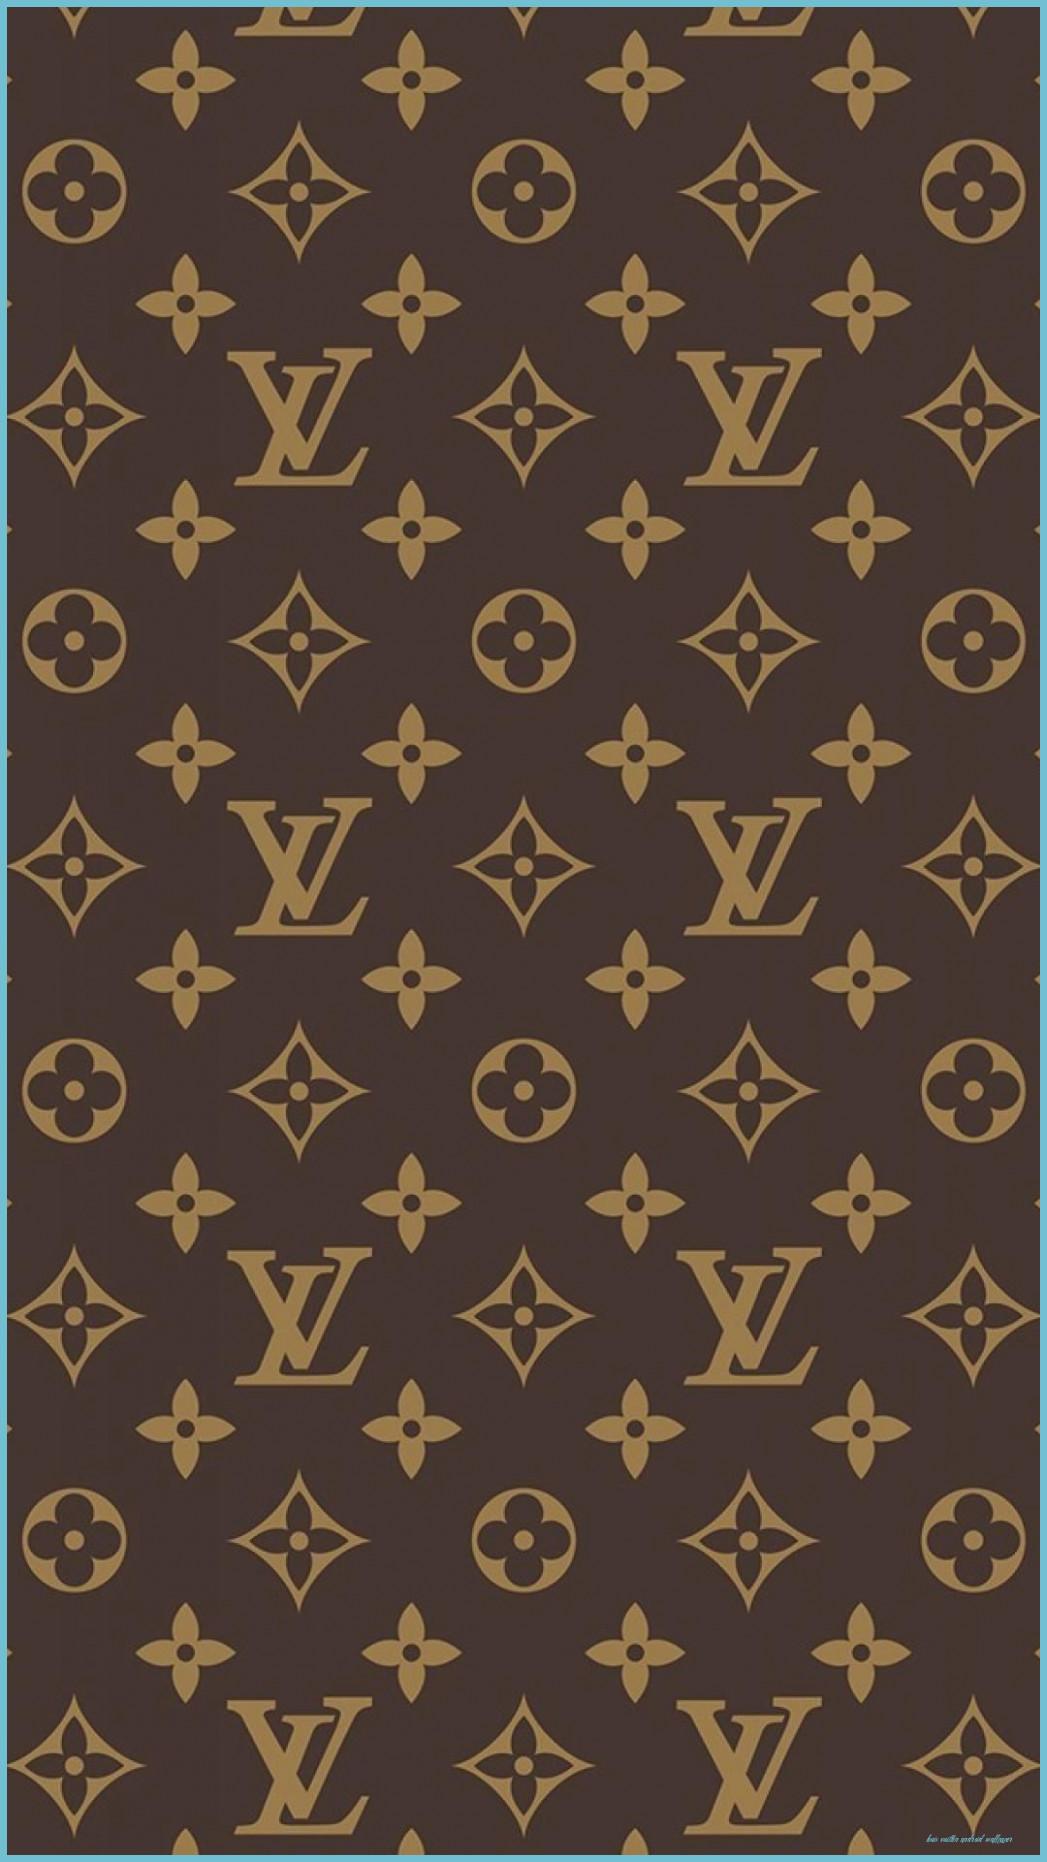 Free download louis vuitton logo wallpaper black [750x300] for your  Desktop, Mobile & Tablet, Explore 33+ Louis Vuitton Logo Wallpaper